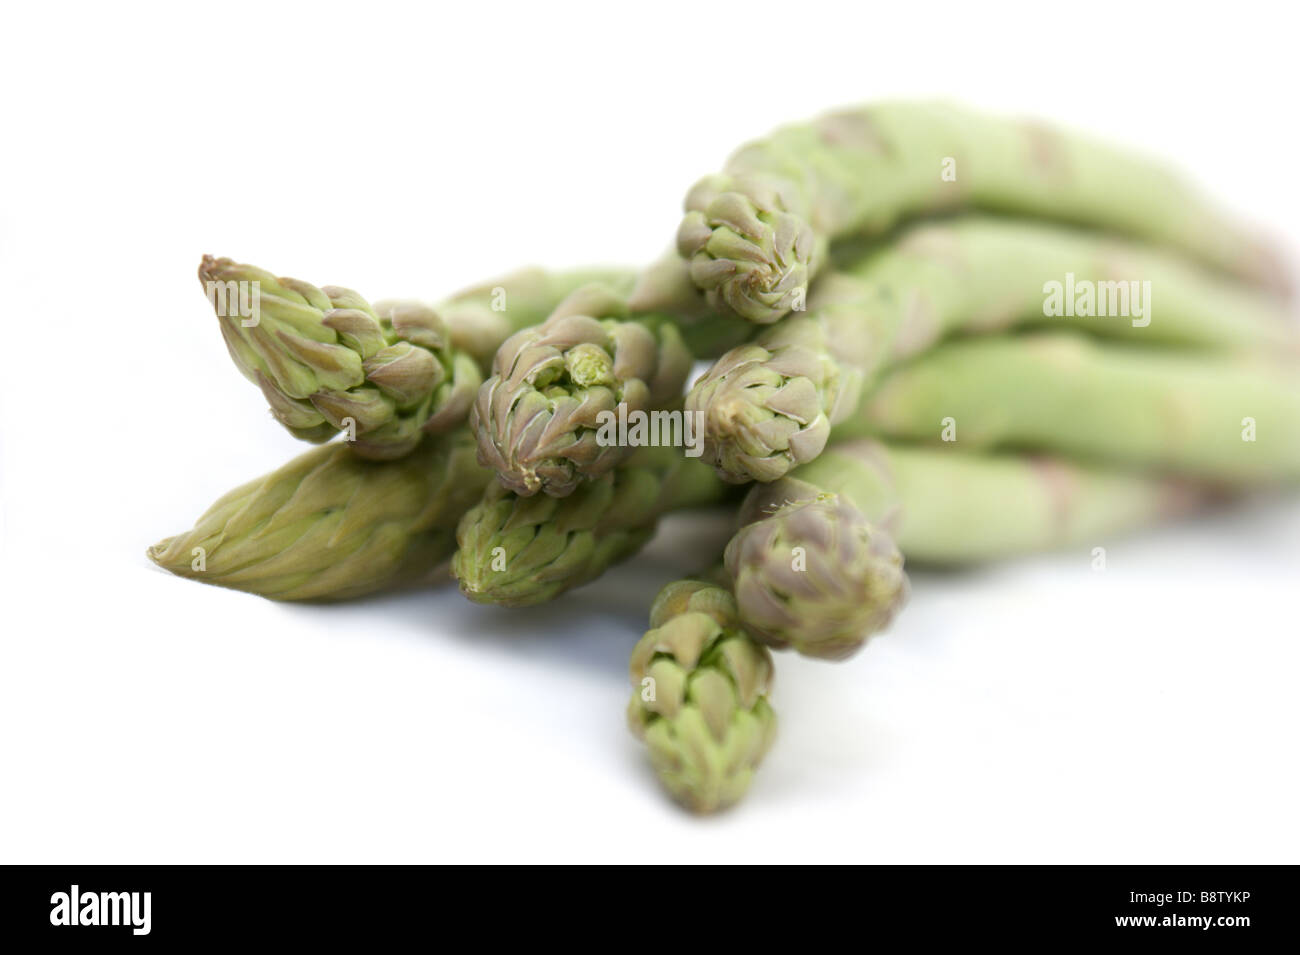 Immagine ravvicinata di punte di asparagi Foto Stock